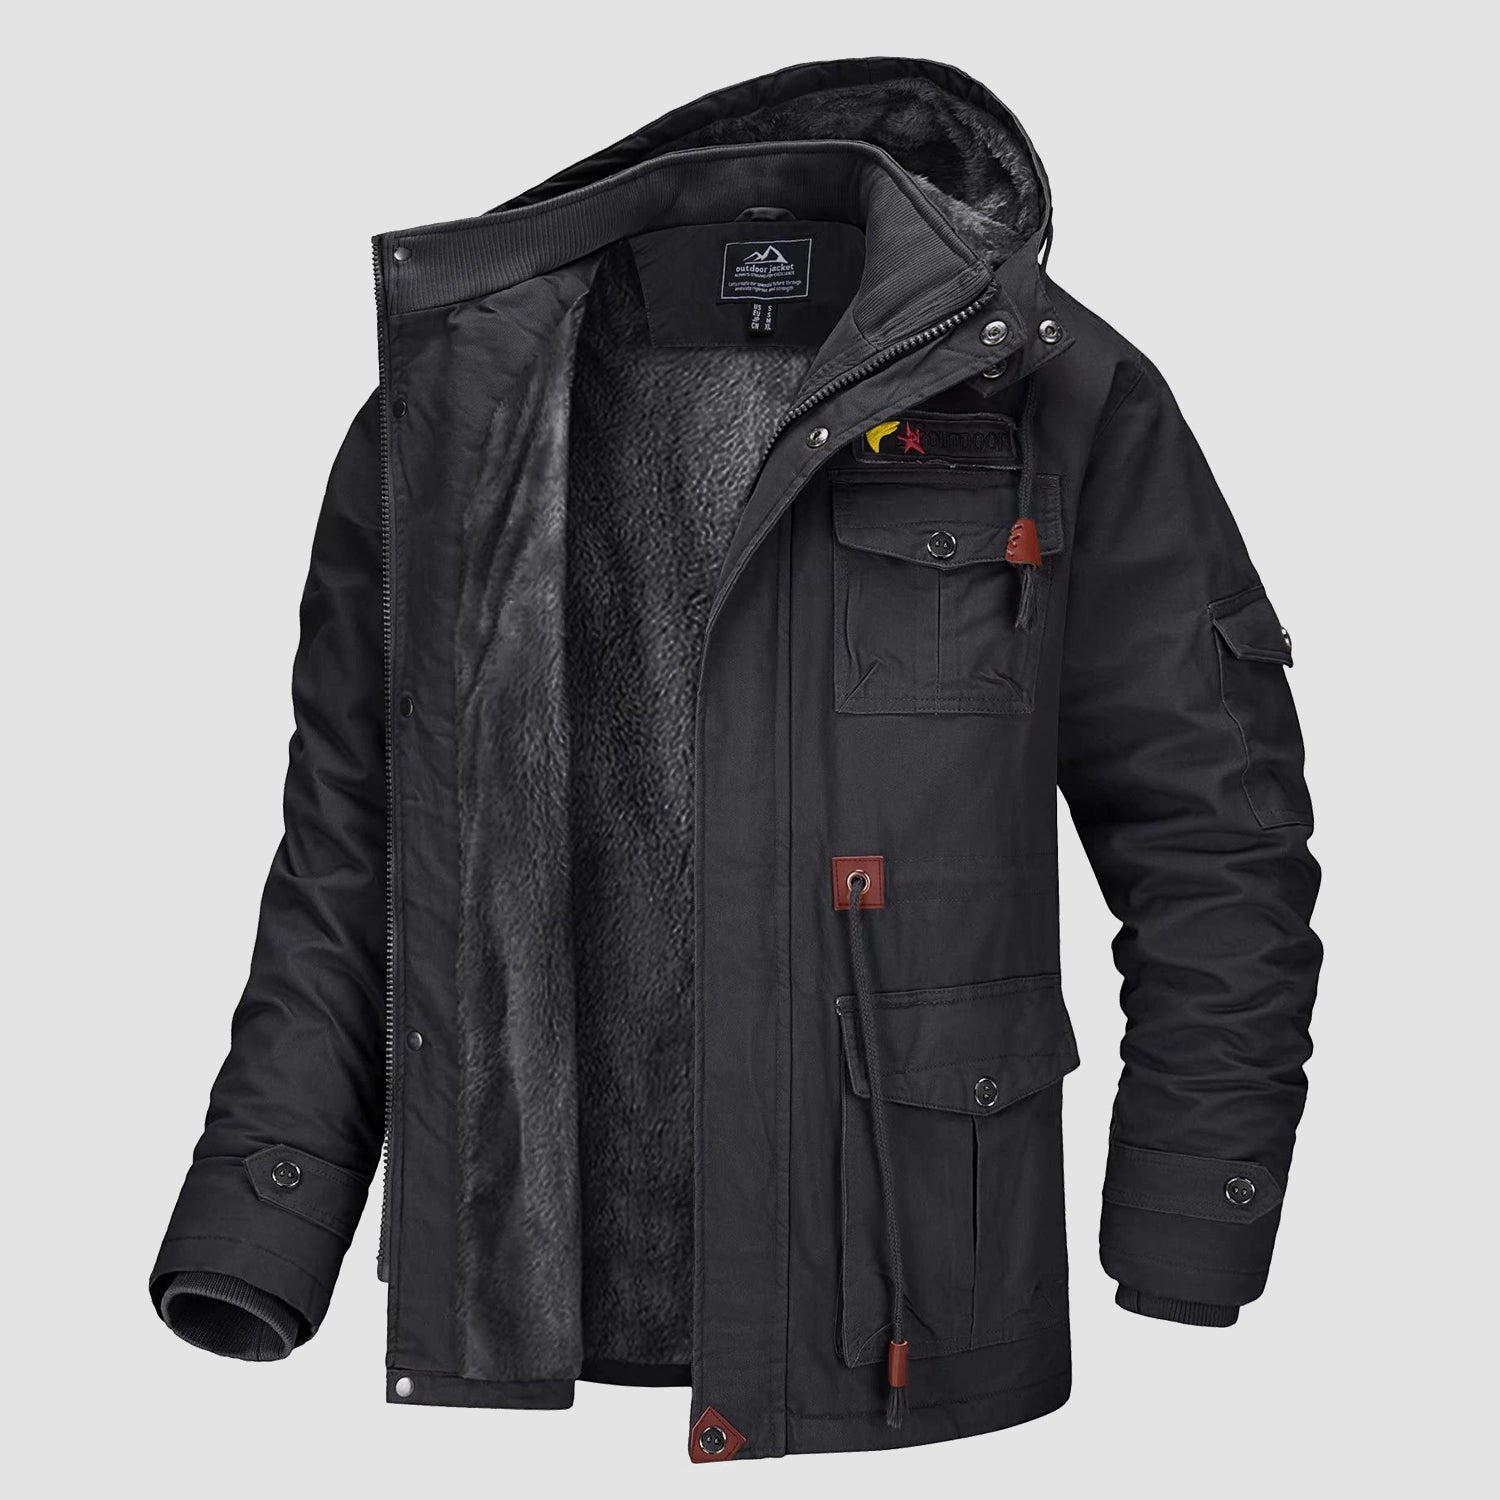 Mens Jacket Cotton Heavy Duty Fleece Lined Winter Coat Detachable Hood XS S  M L